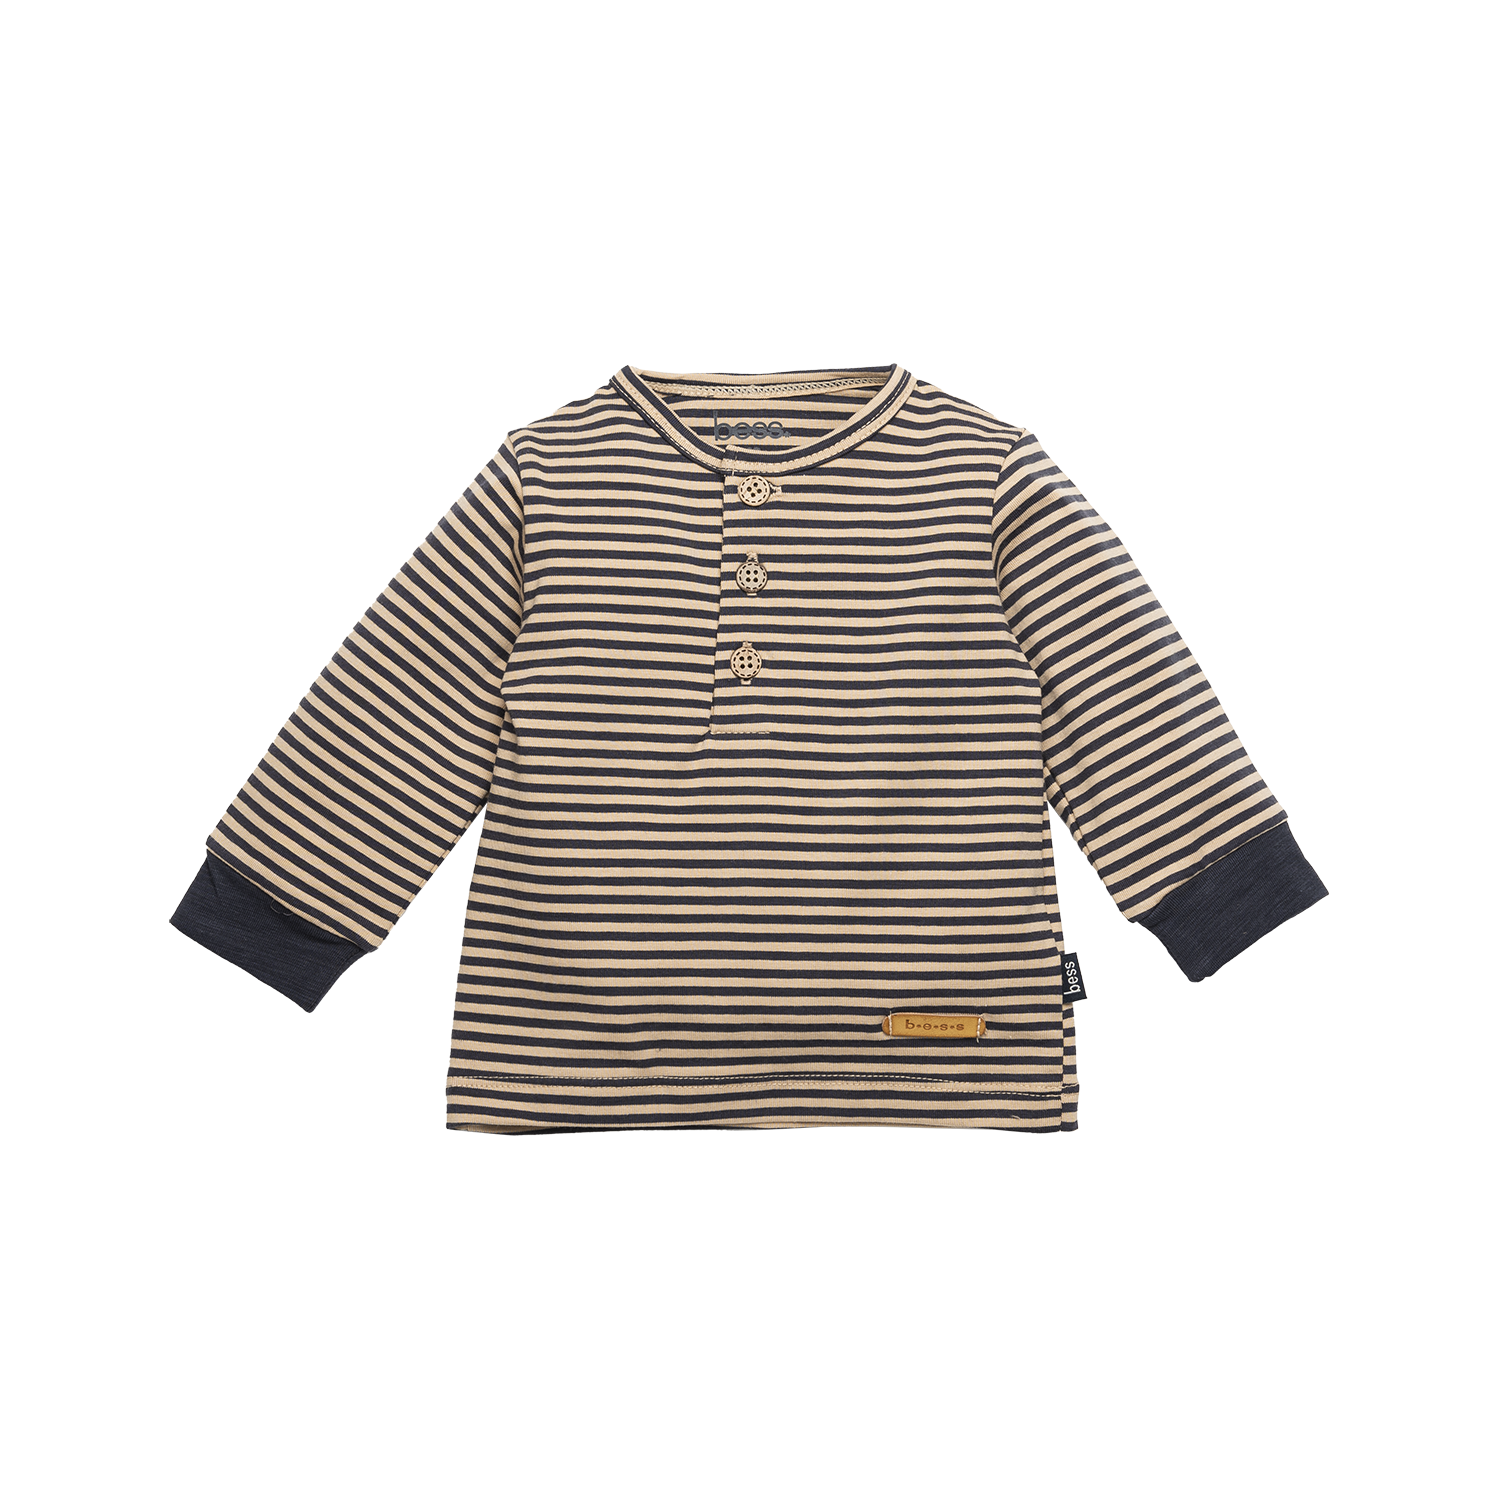 Jongens Shirt l.sl. Striped van B.E.S.S. in de kleur Sand in maat 68.